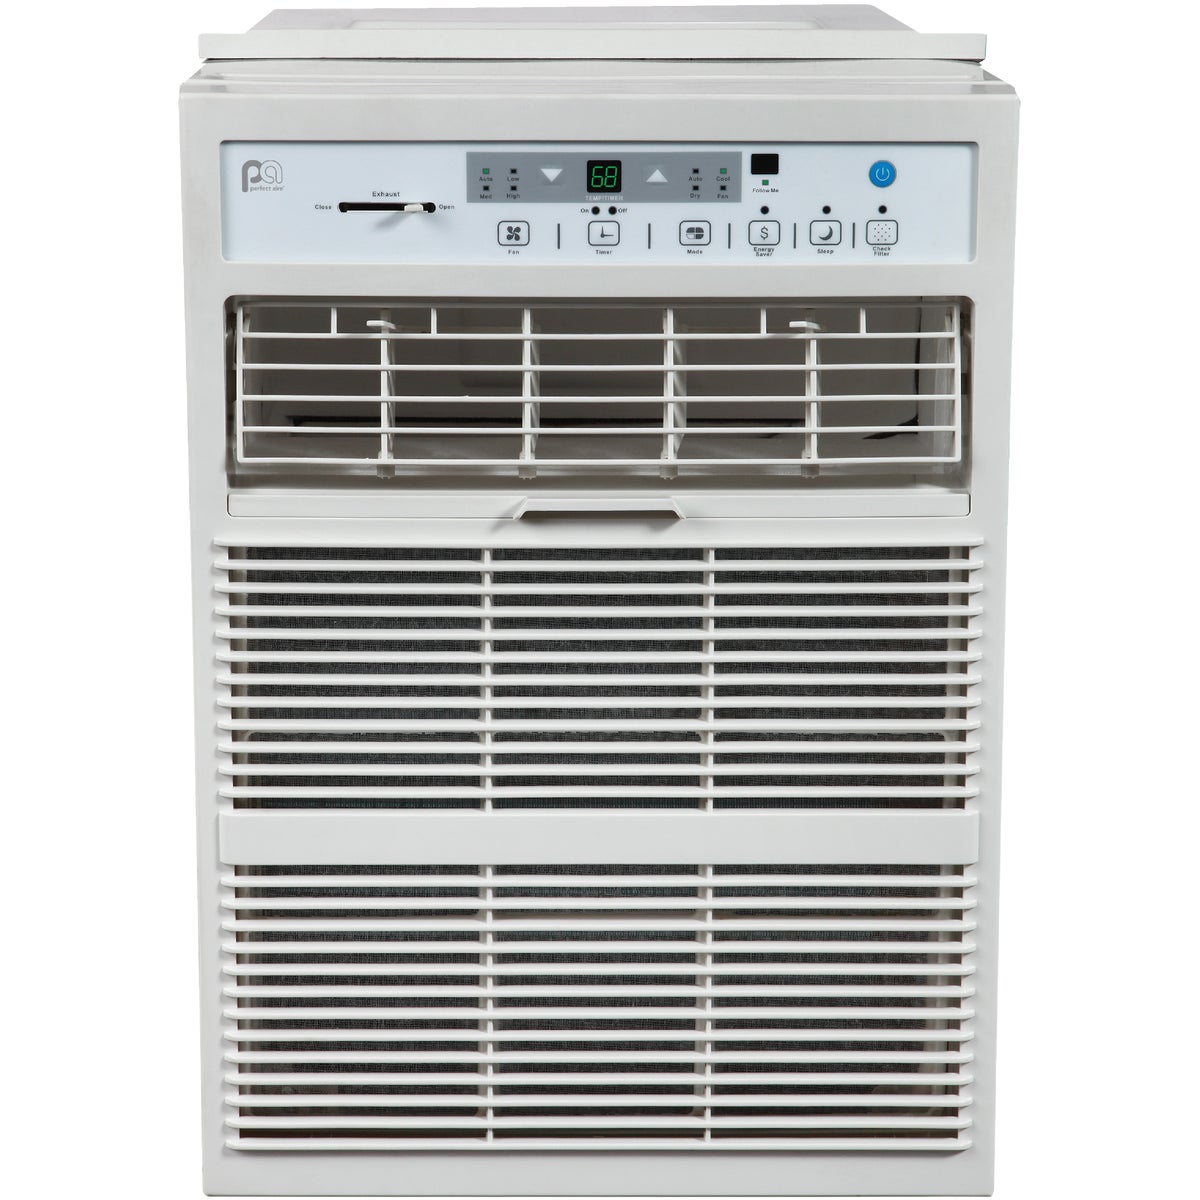 Item 500048, The 10,000 BTU (British Thermal Unit) casement slider air conditioner uses 